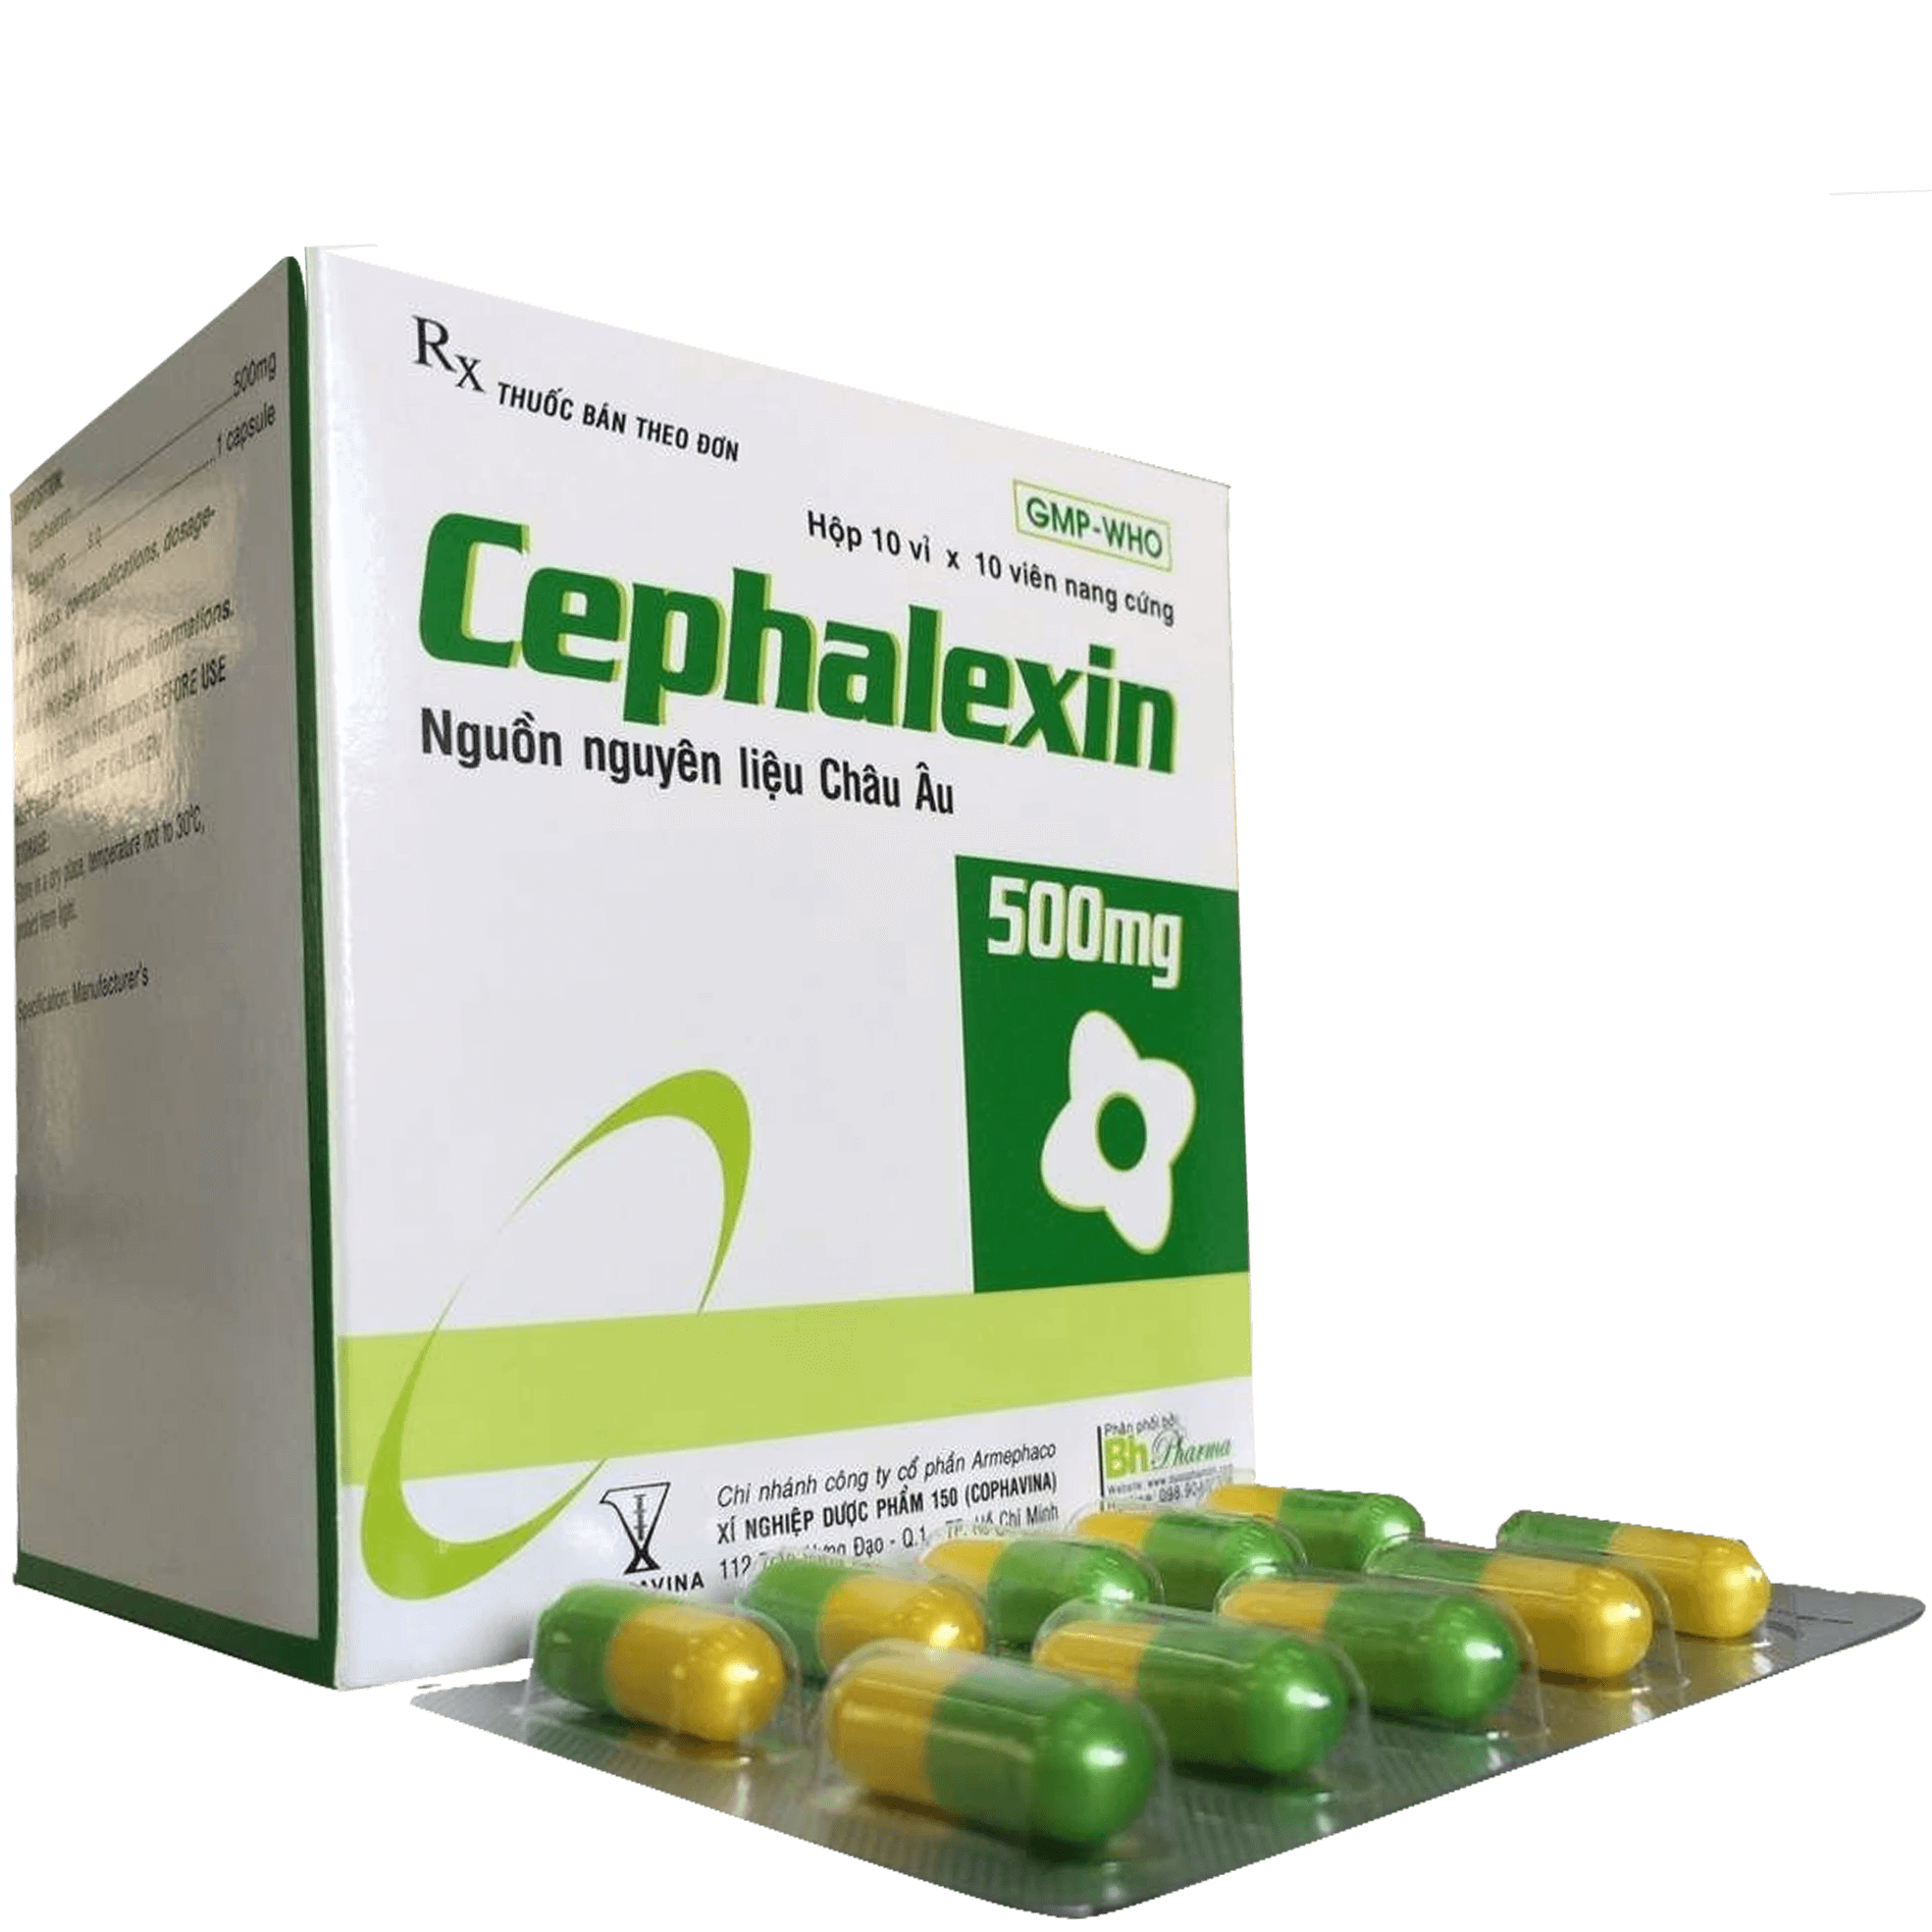 Cephalexin 500mg Armephaco (H/100v)